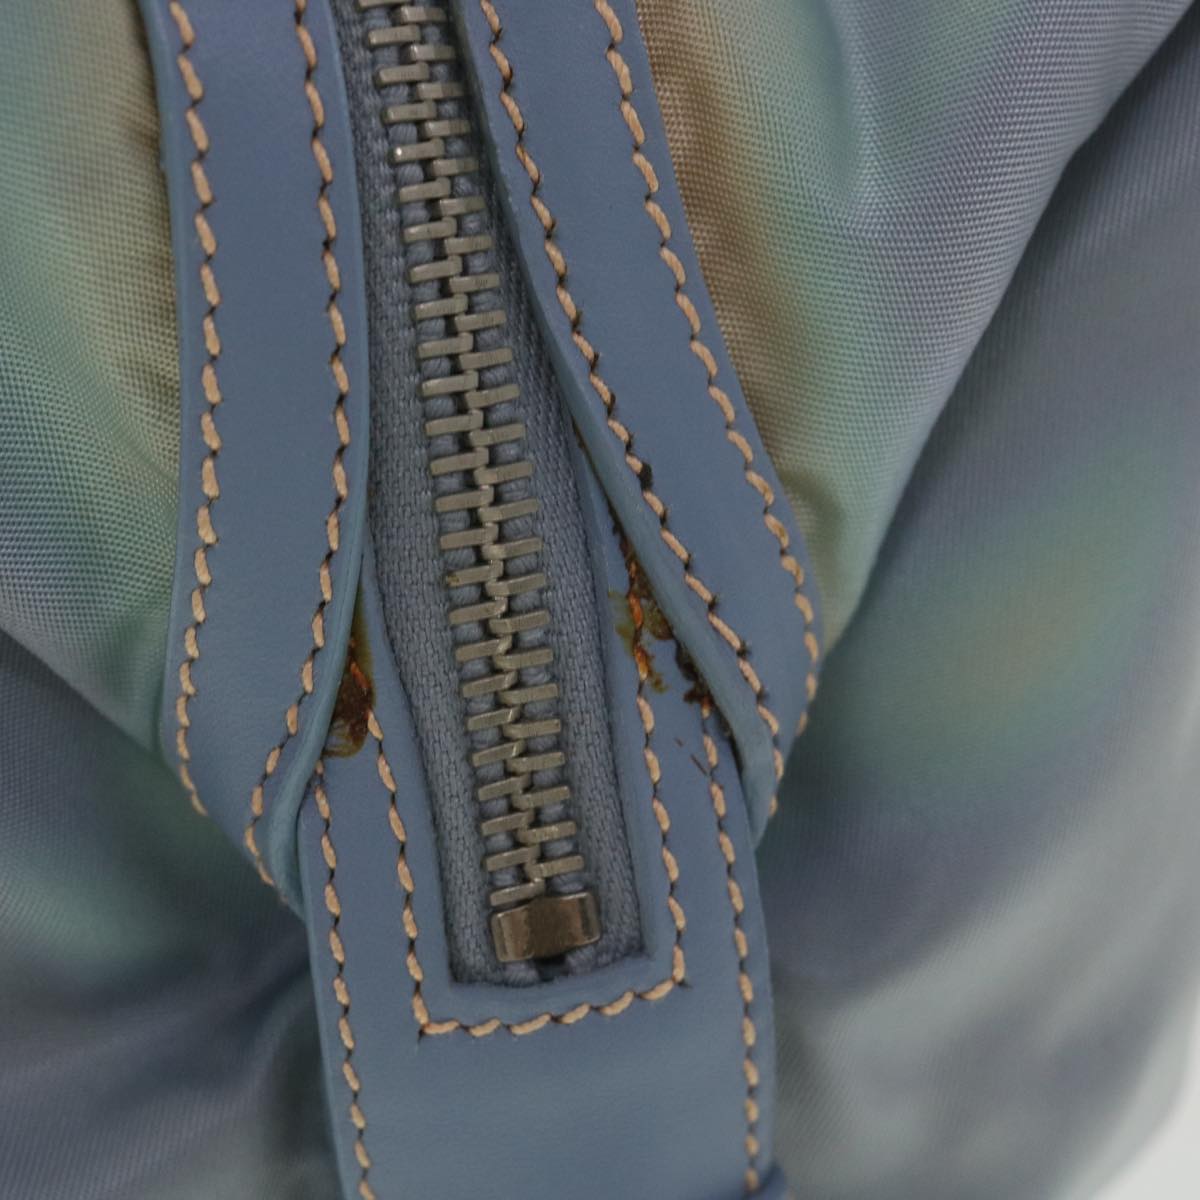 PRADA Shoulder Bag Nylon Light Blue Auth 38496